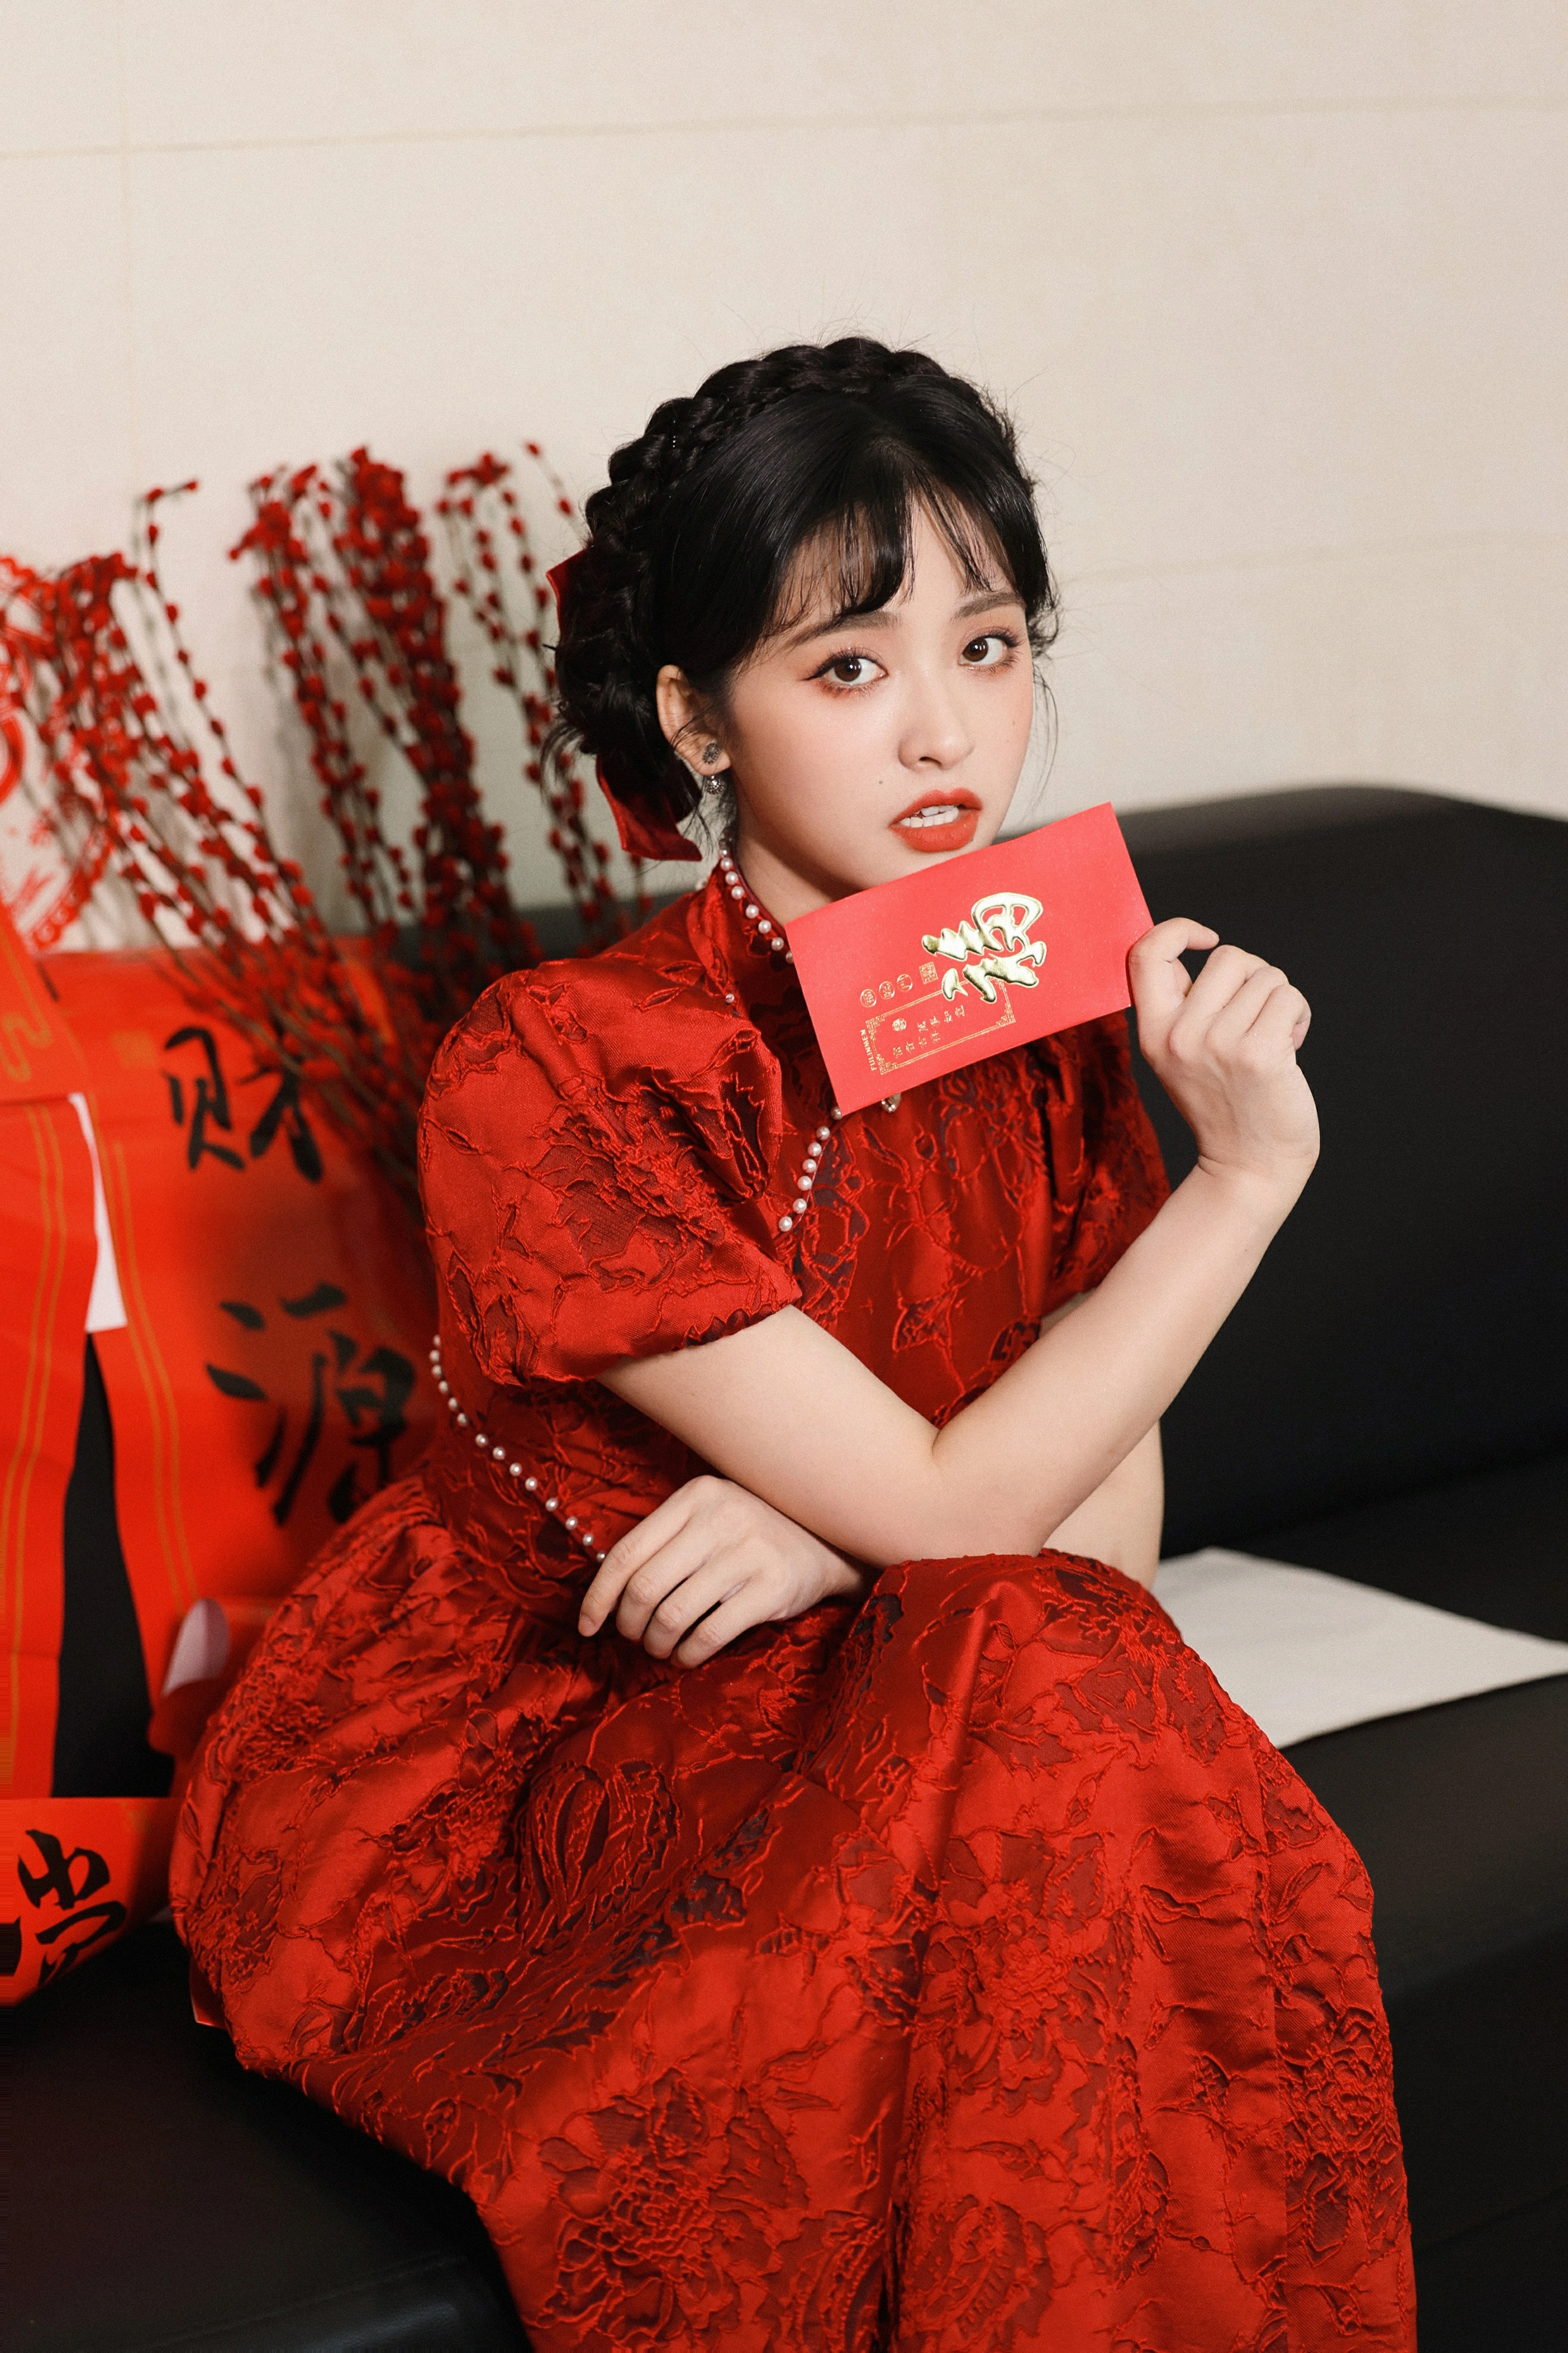 沈月贺新春 红色蕾丝旗袍加盘发造型太美了吧！,1 (2)